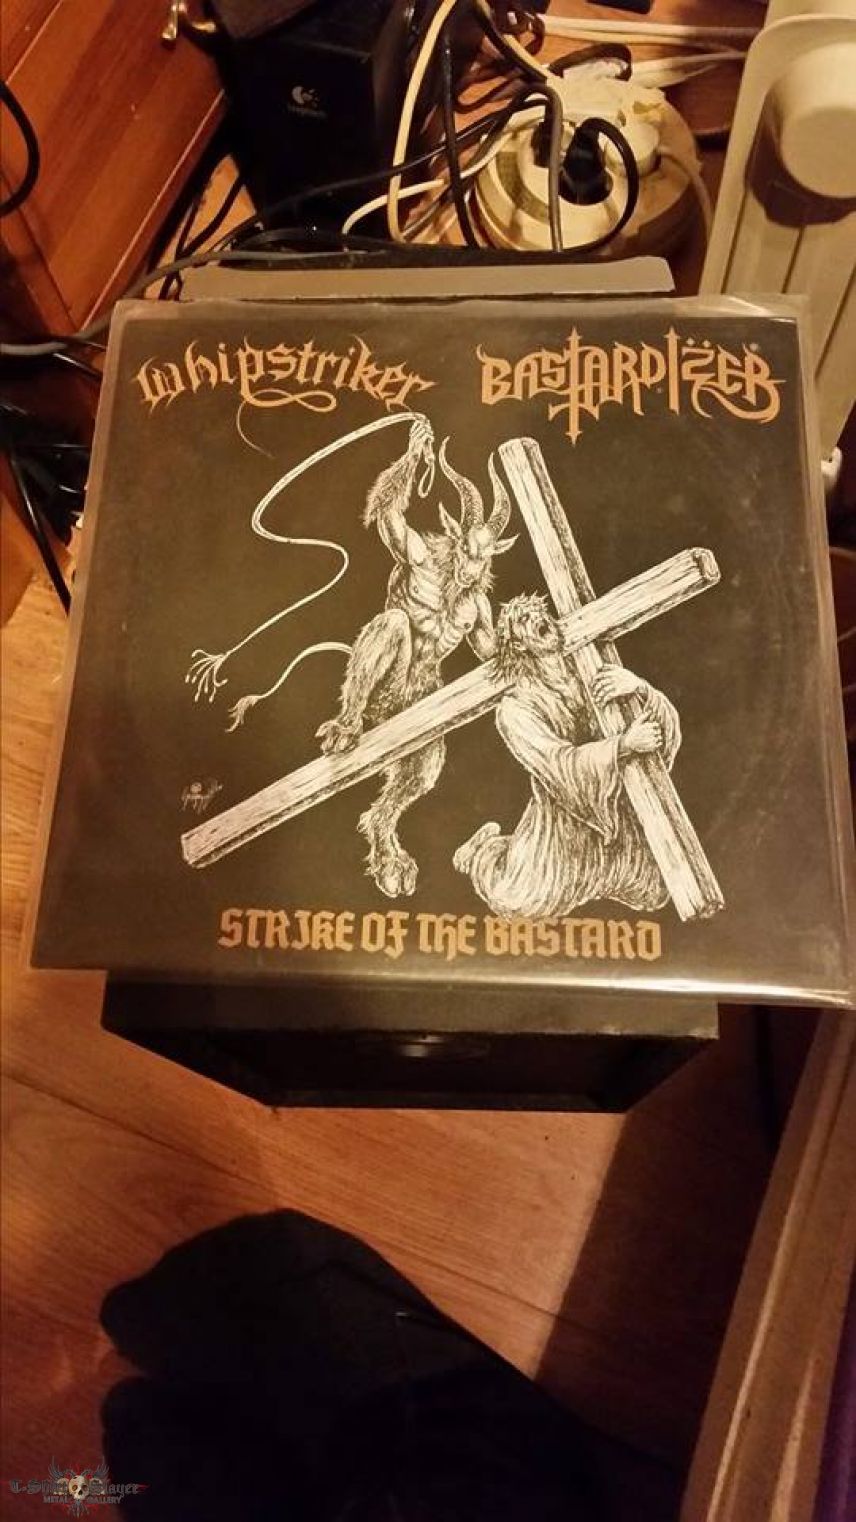 Whipstriker/Bastardizer Split